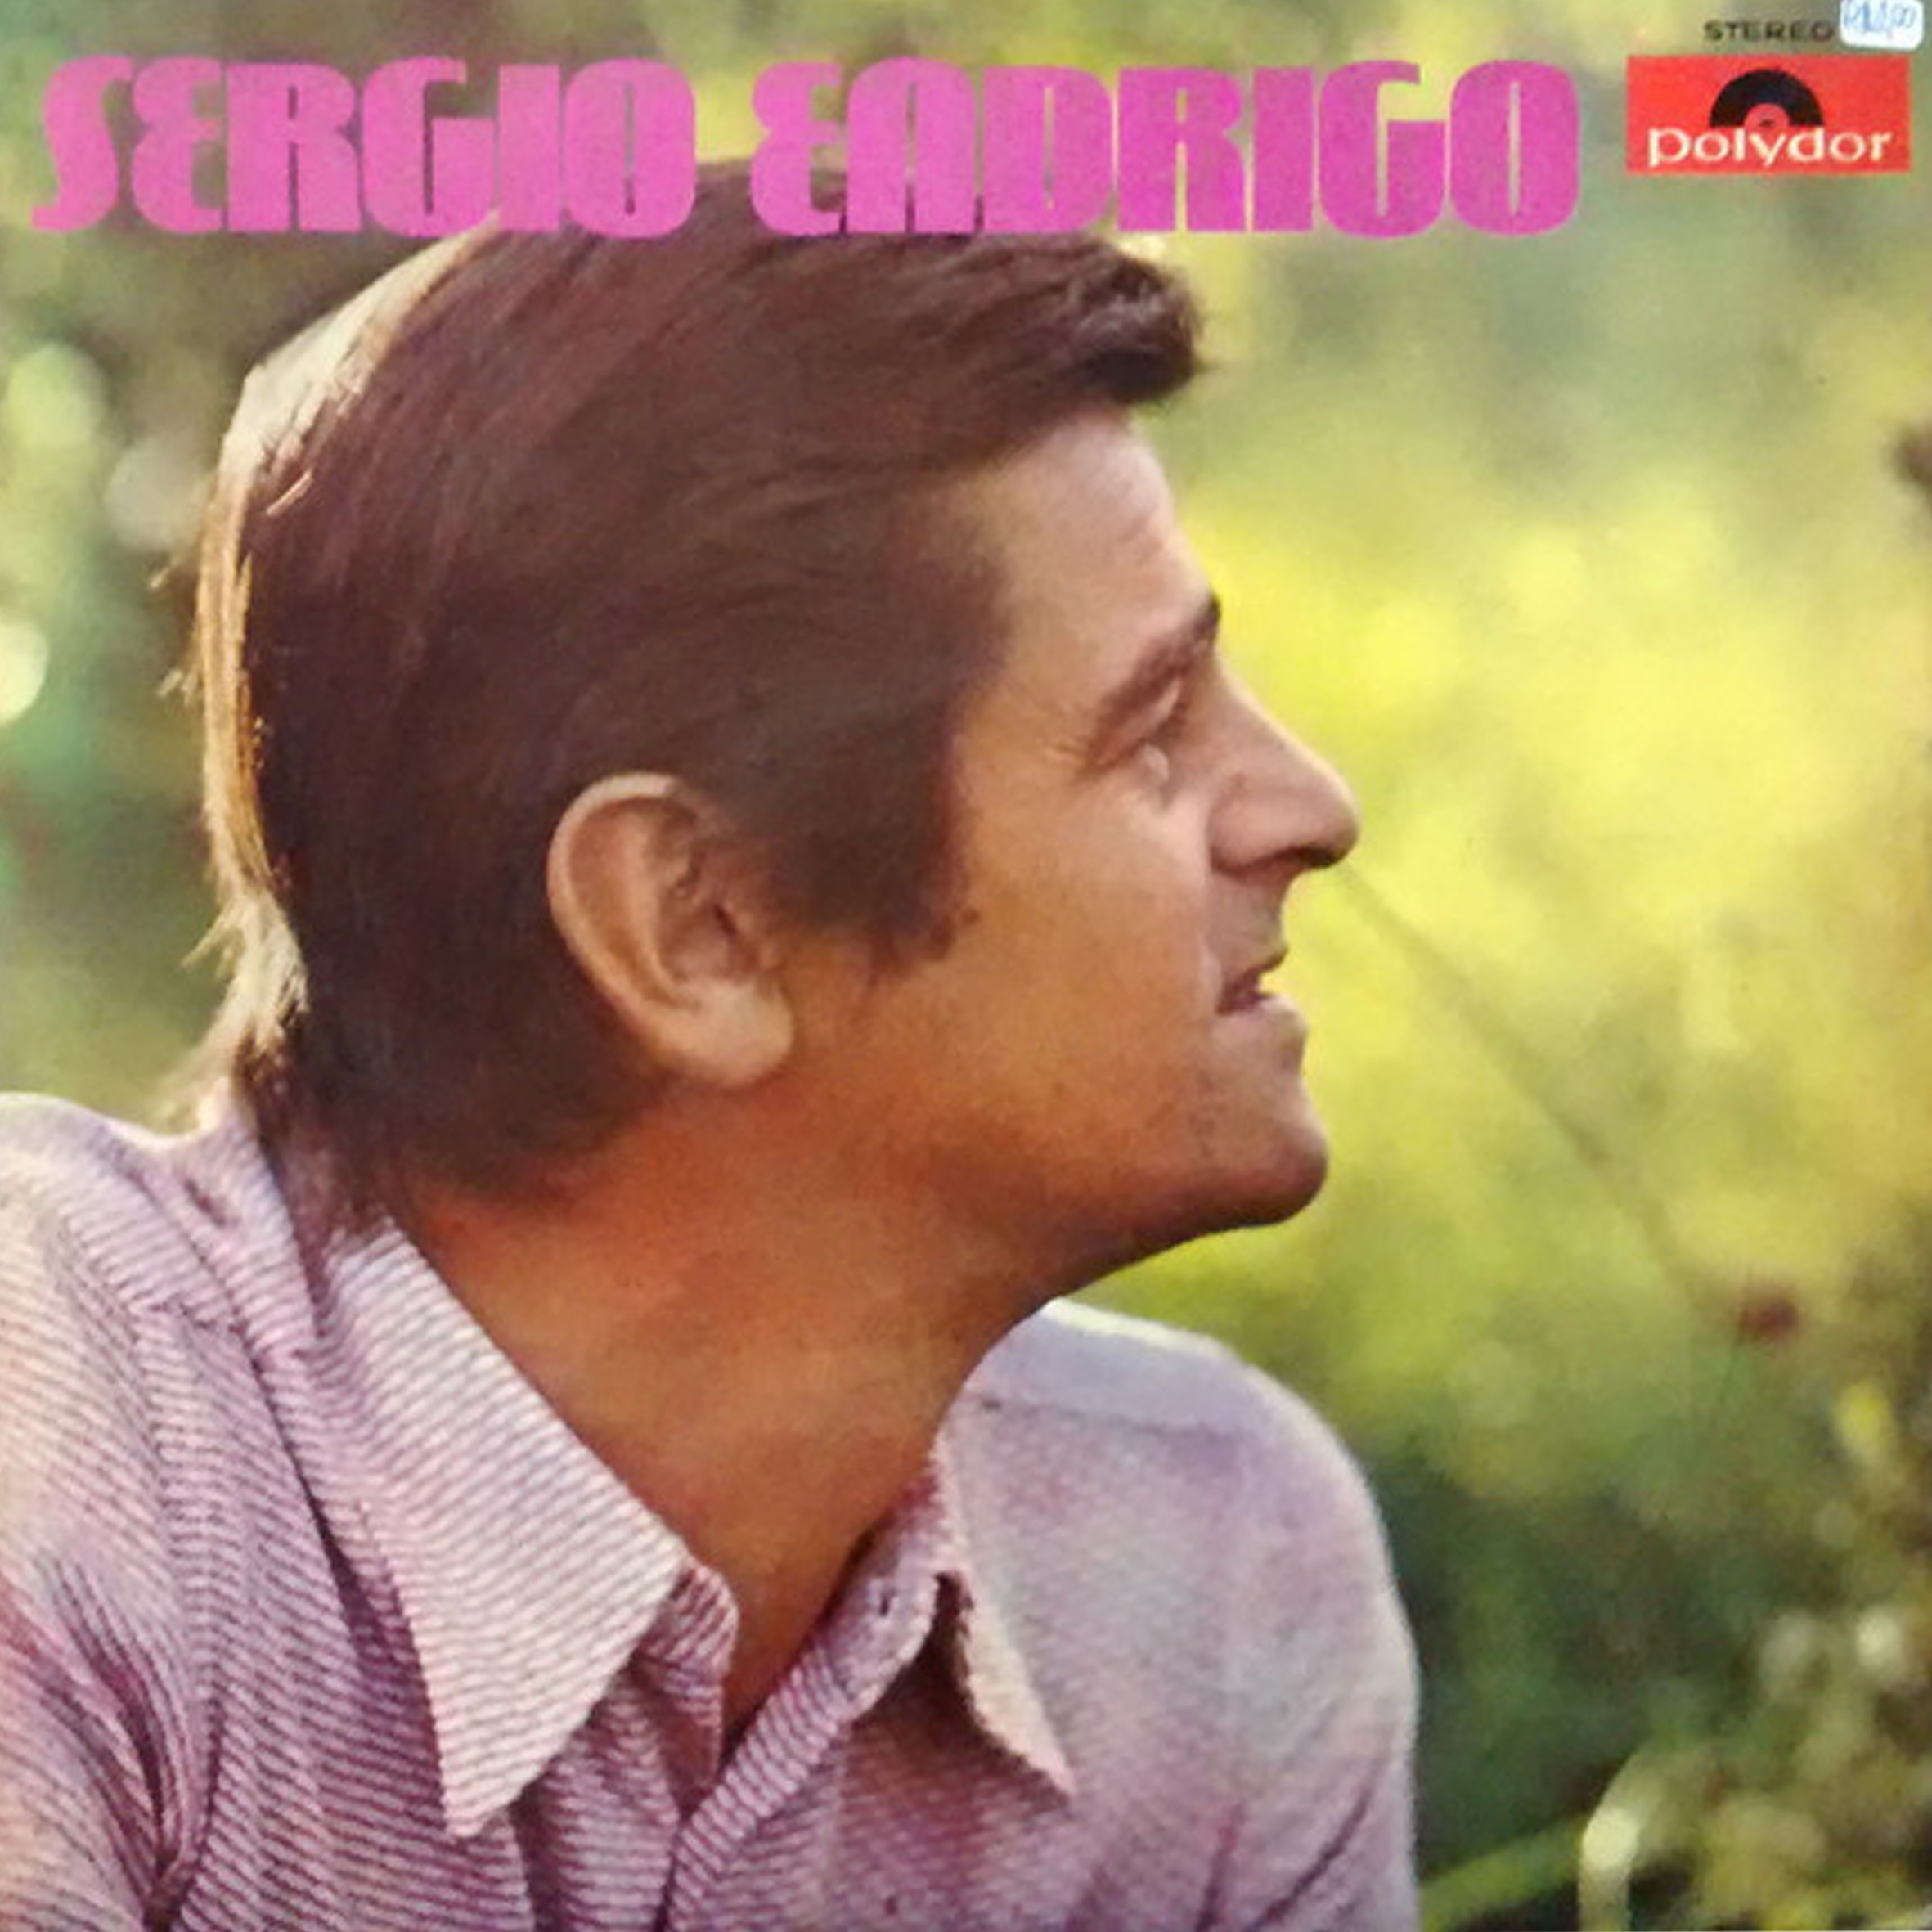 Vinil - Sergio Endrigo - 1972